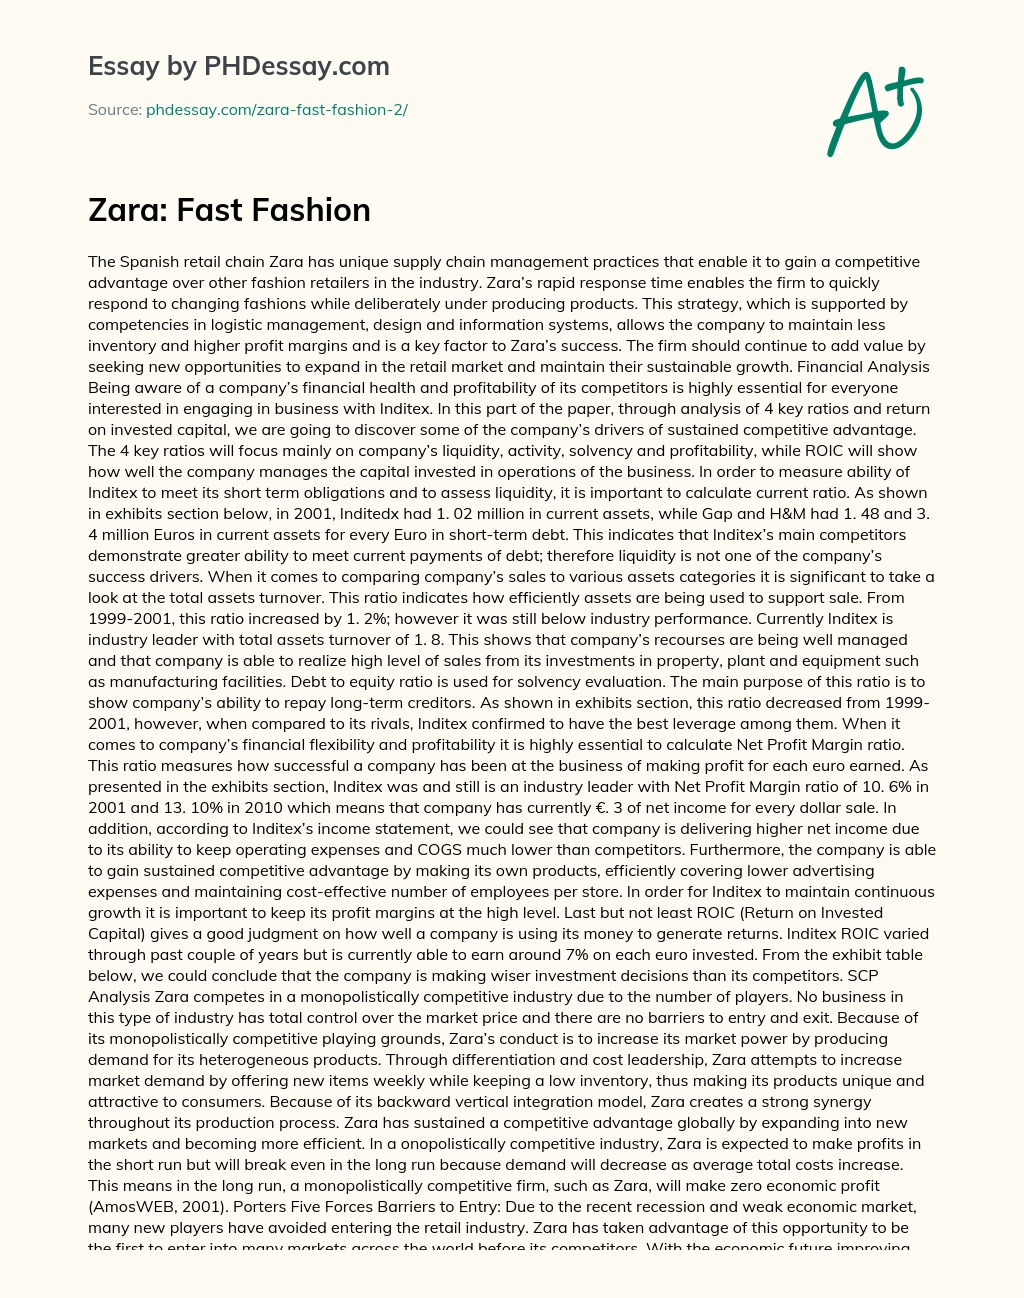 Zara: Fast Fashion essay